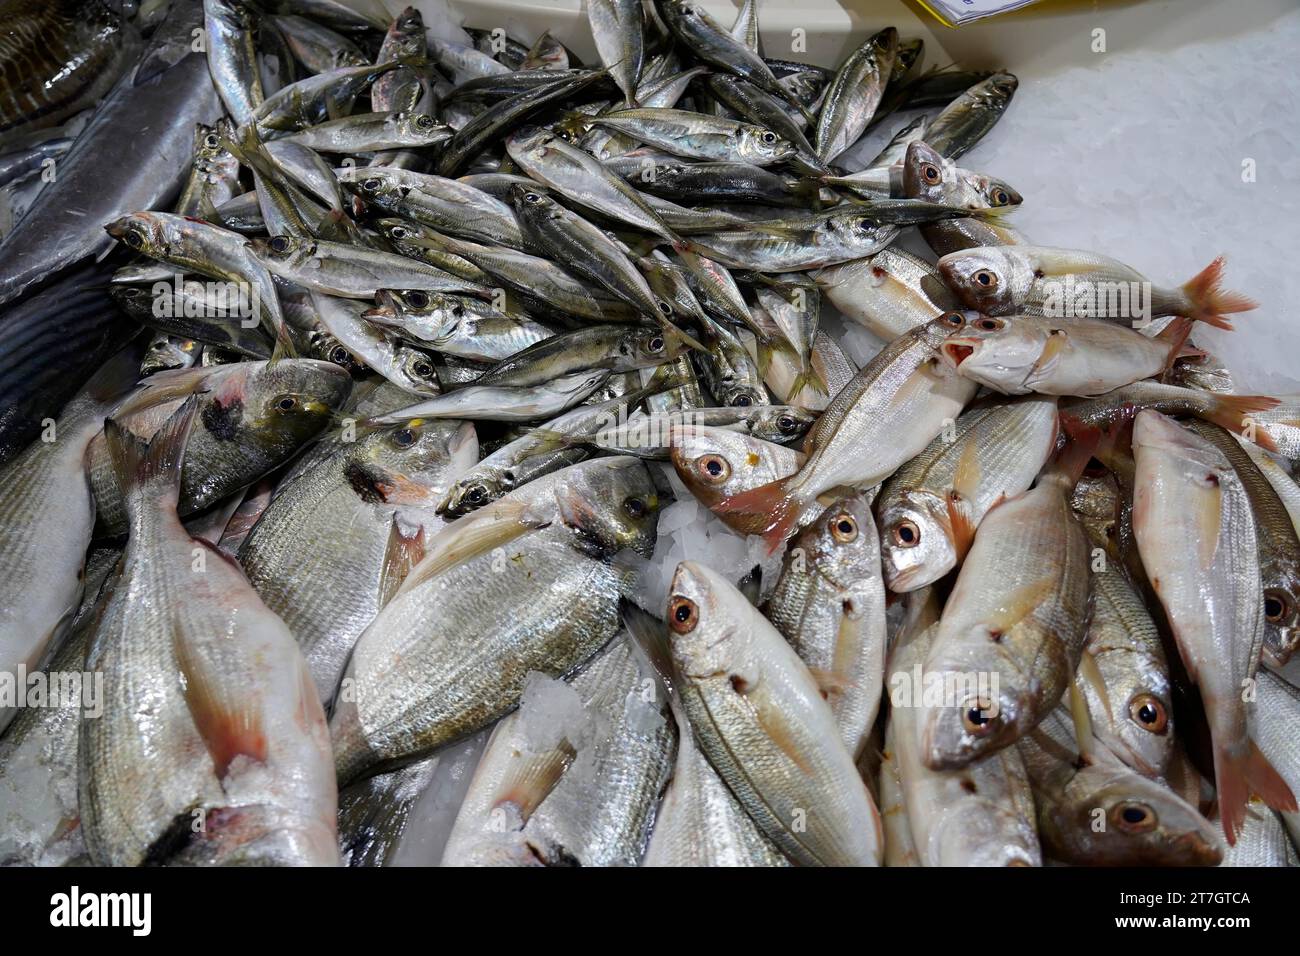 Poisson cru frais, fruits de mer, hall de marché de poisson, hall de marché, Lagos, Portugal, Europe Banque D'Images